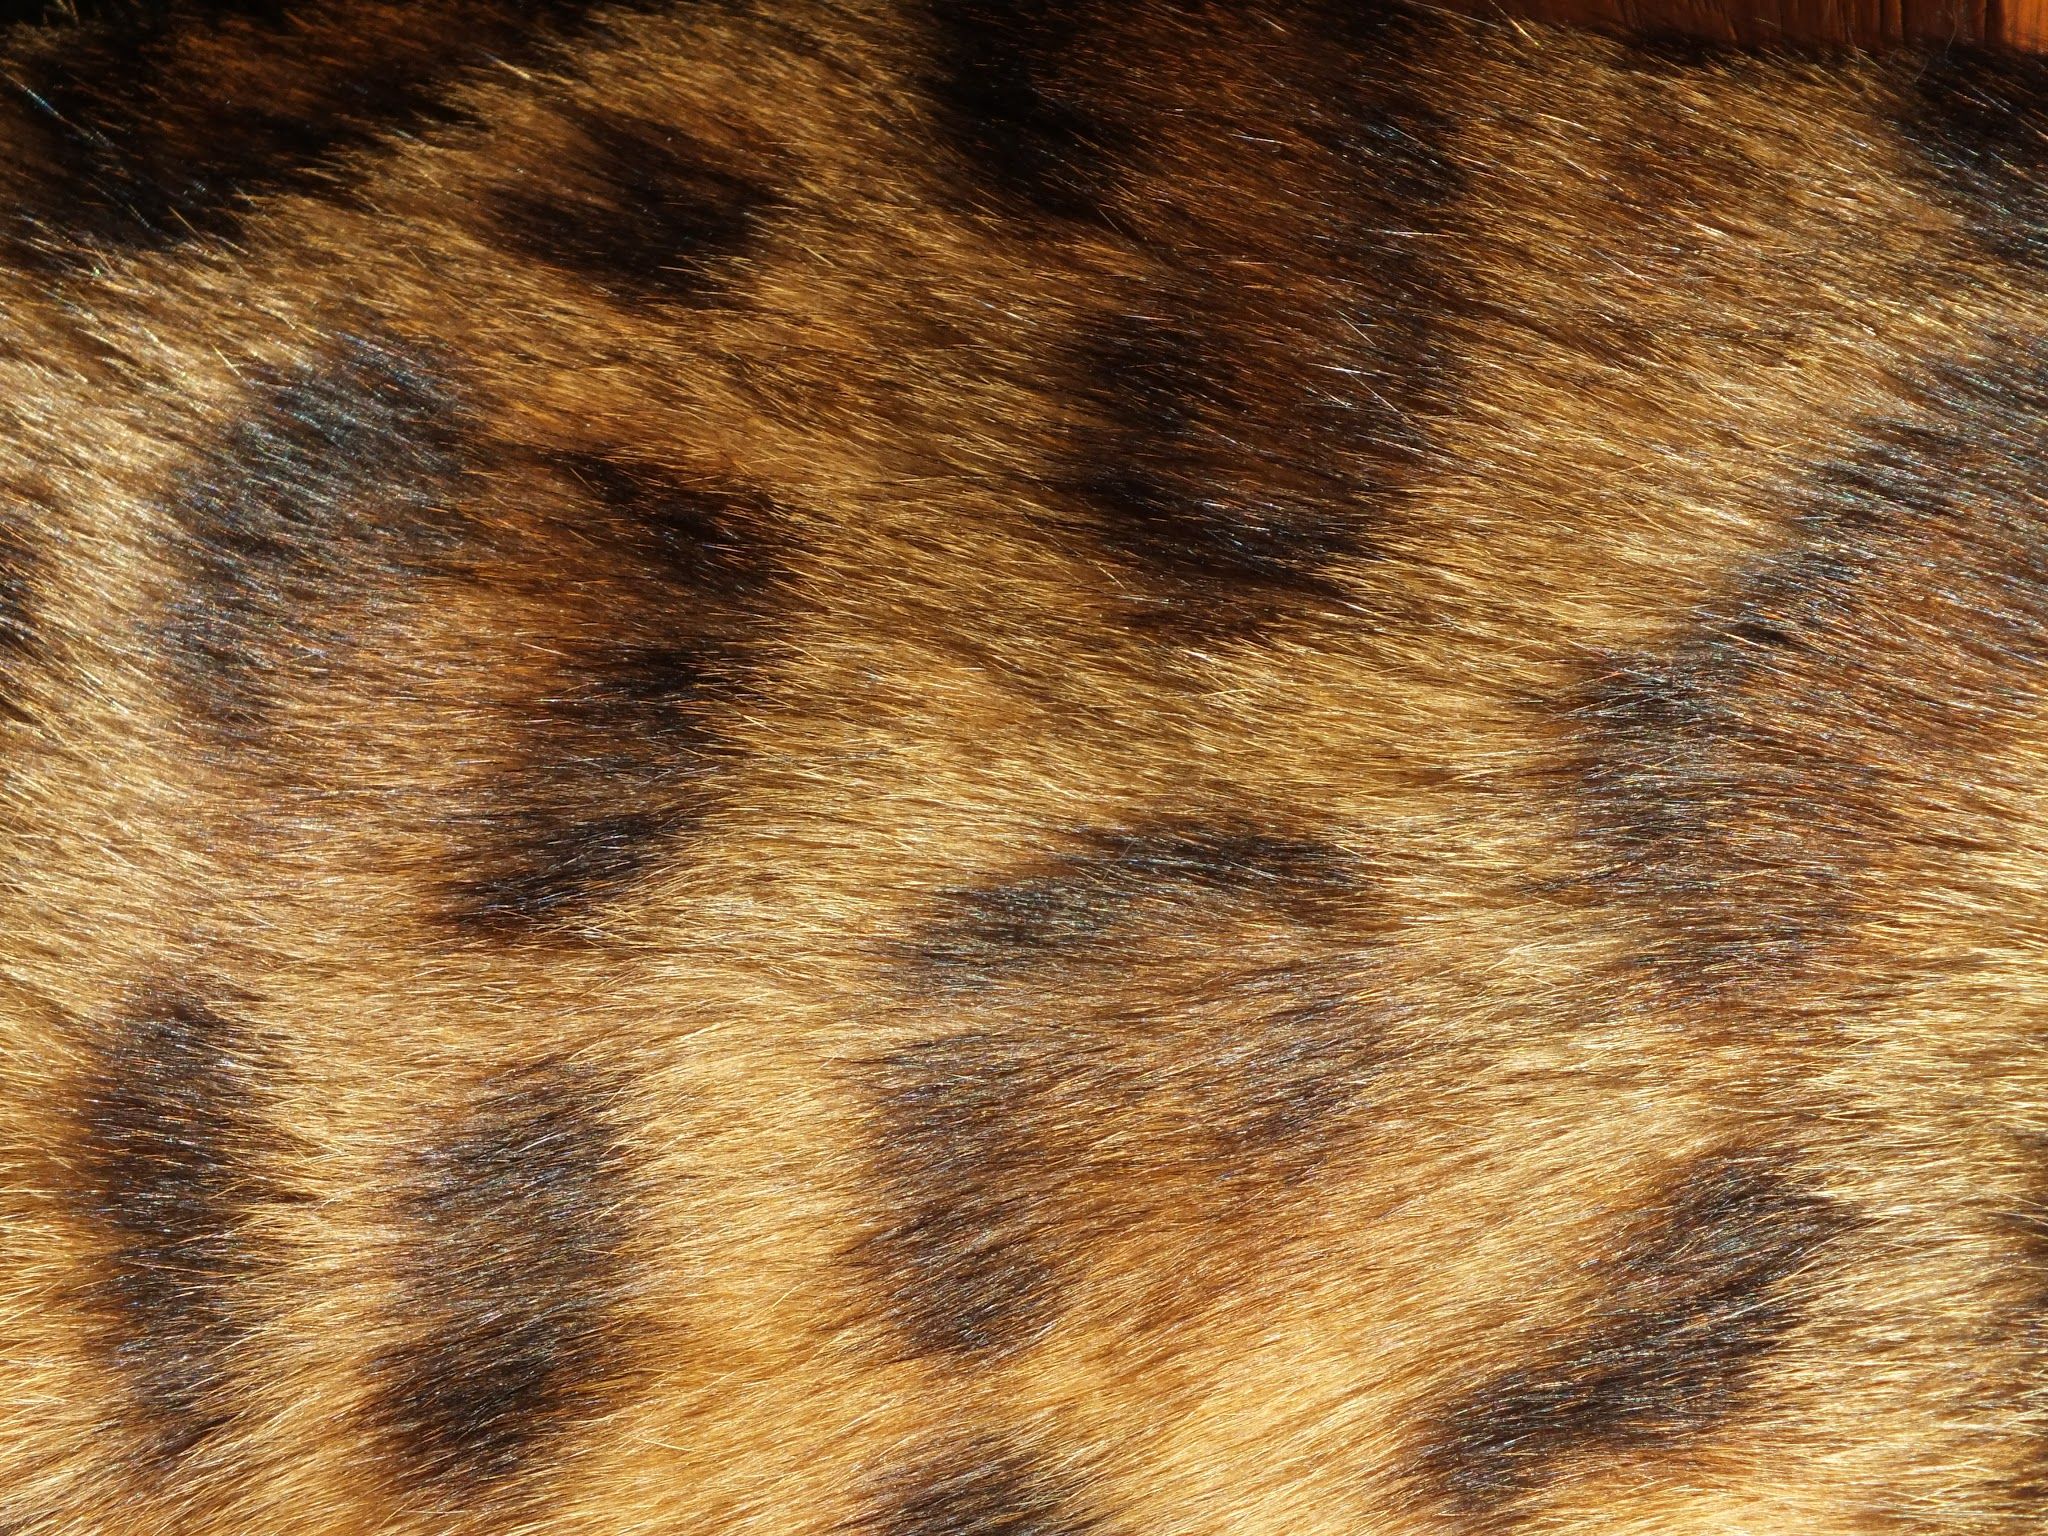 Шерстка. Кошачья шерсть. Текстура шерсти кошки. Кошачья шерсть текстура. Мех кота.